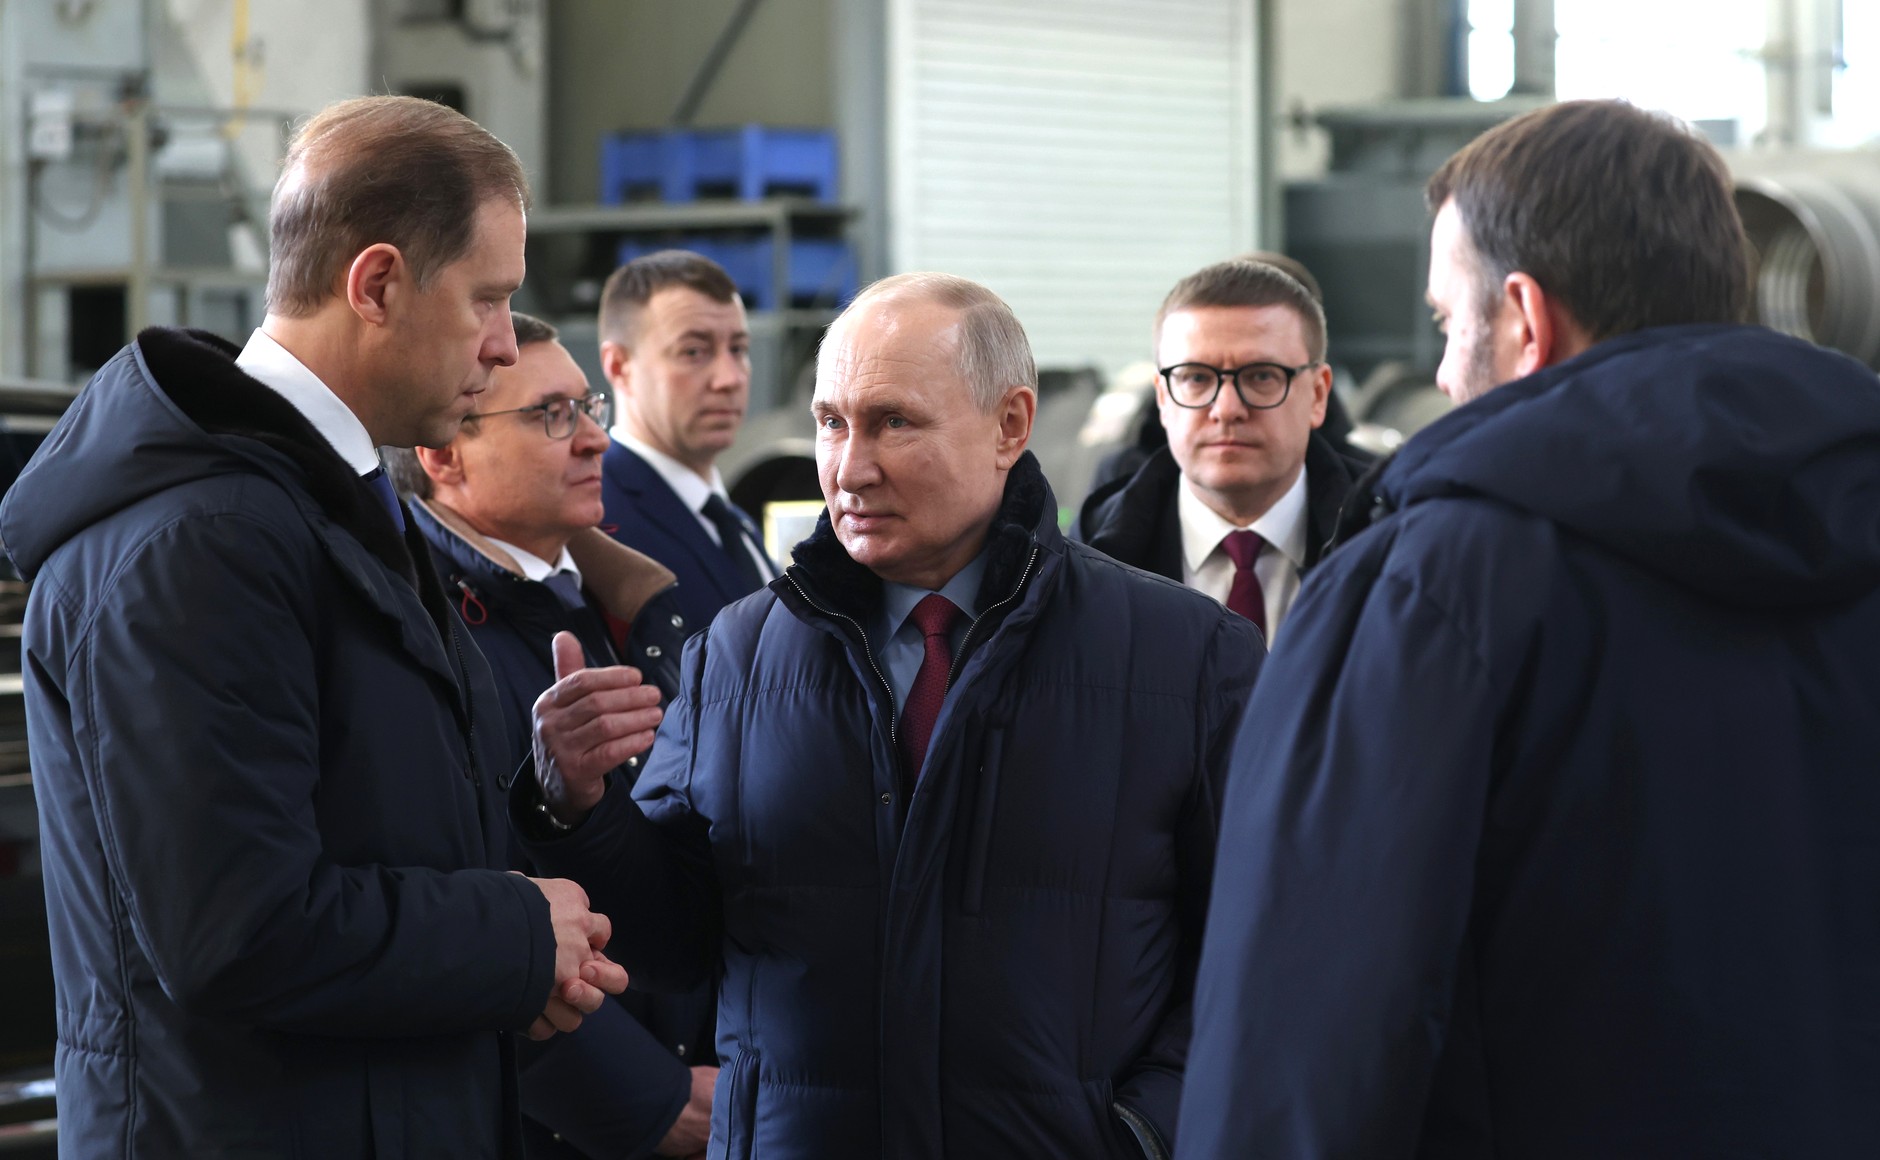 Владимир Путин провёл встречу со студентами и работниками промышленных предприятий Челябинской области.